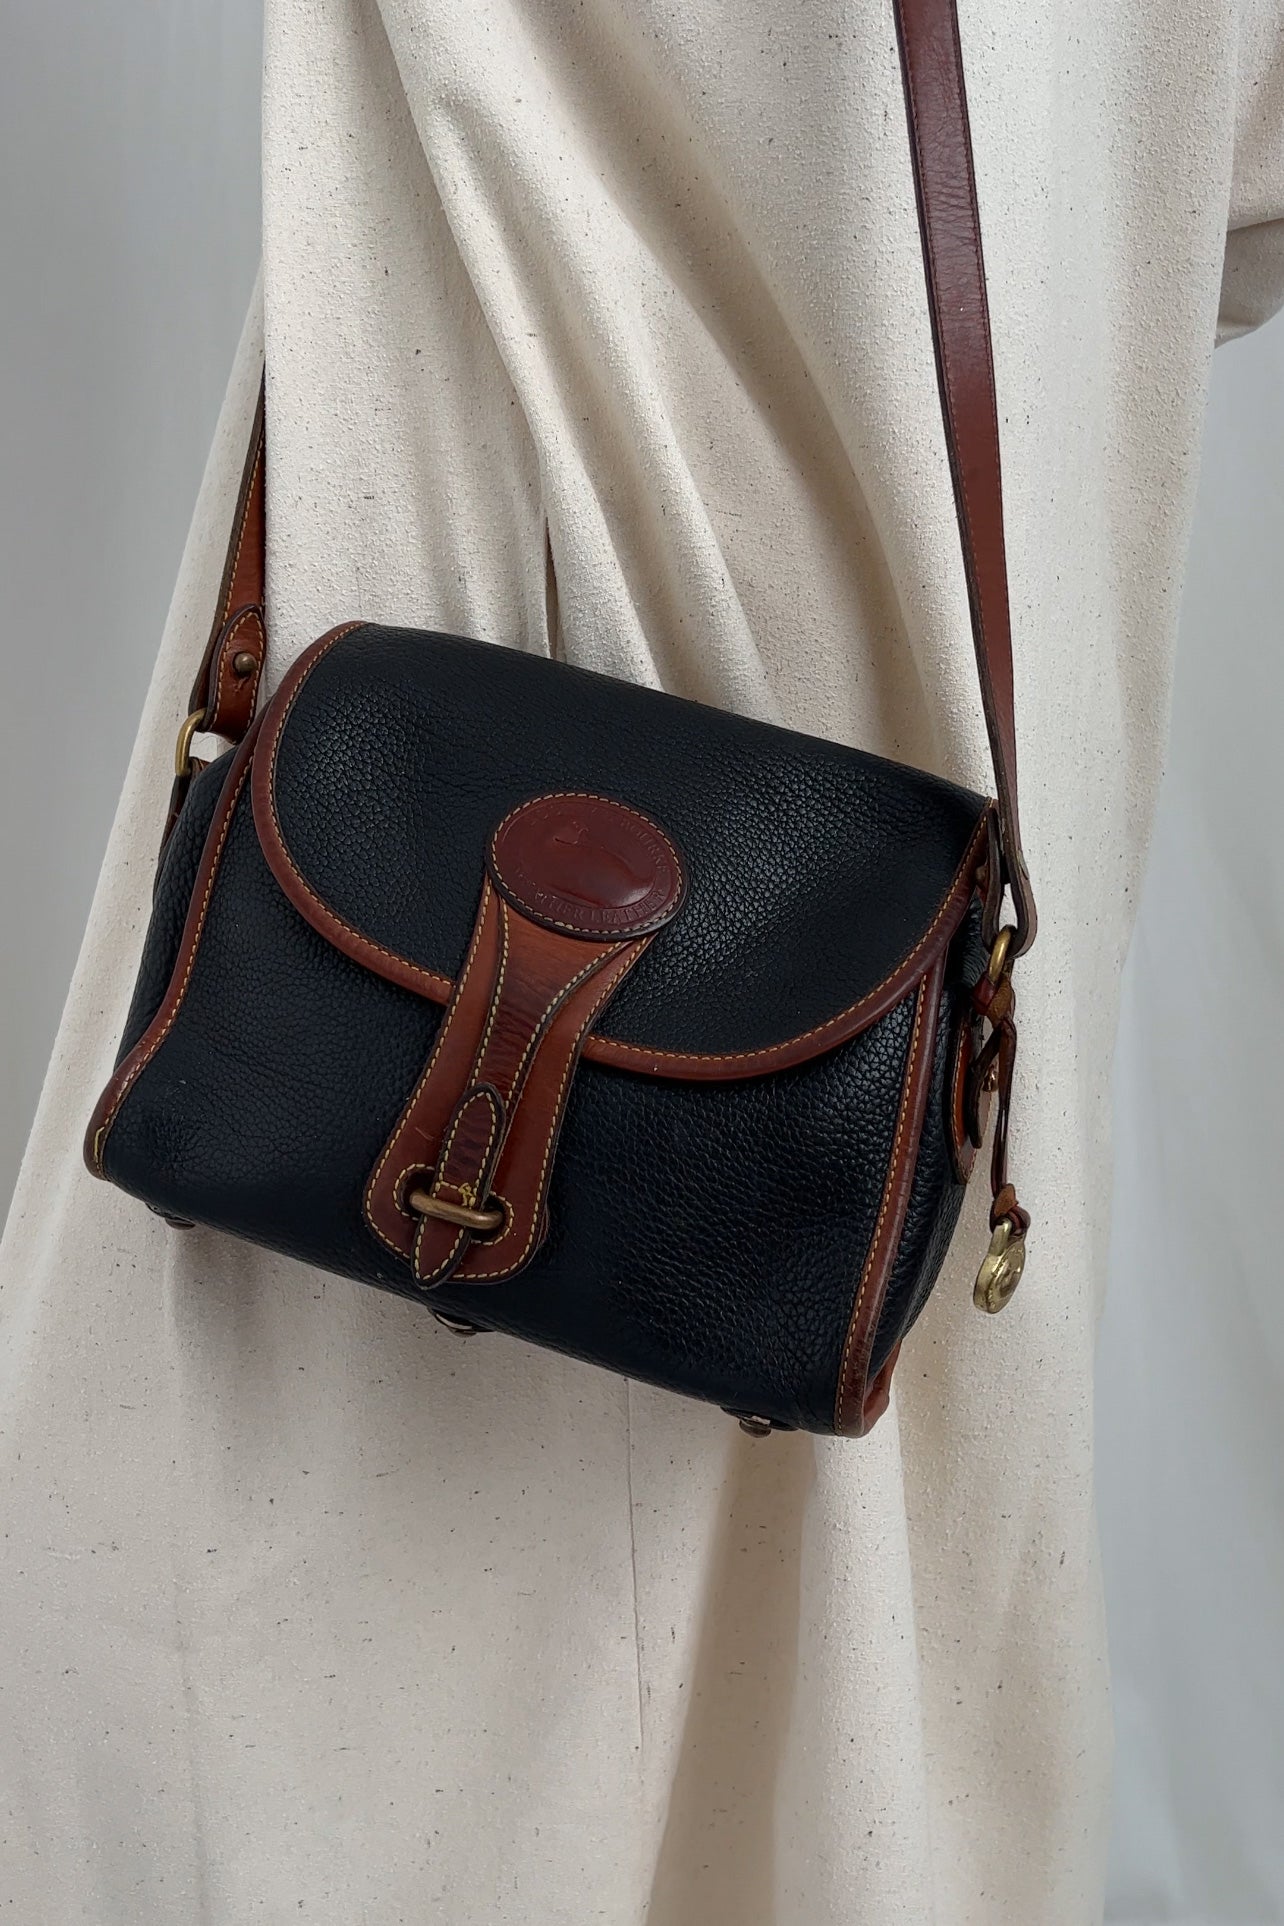 Vintage Charbon Dooney & Bourke Leather Shoulder Bag